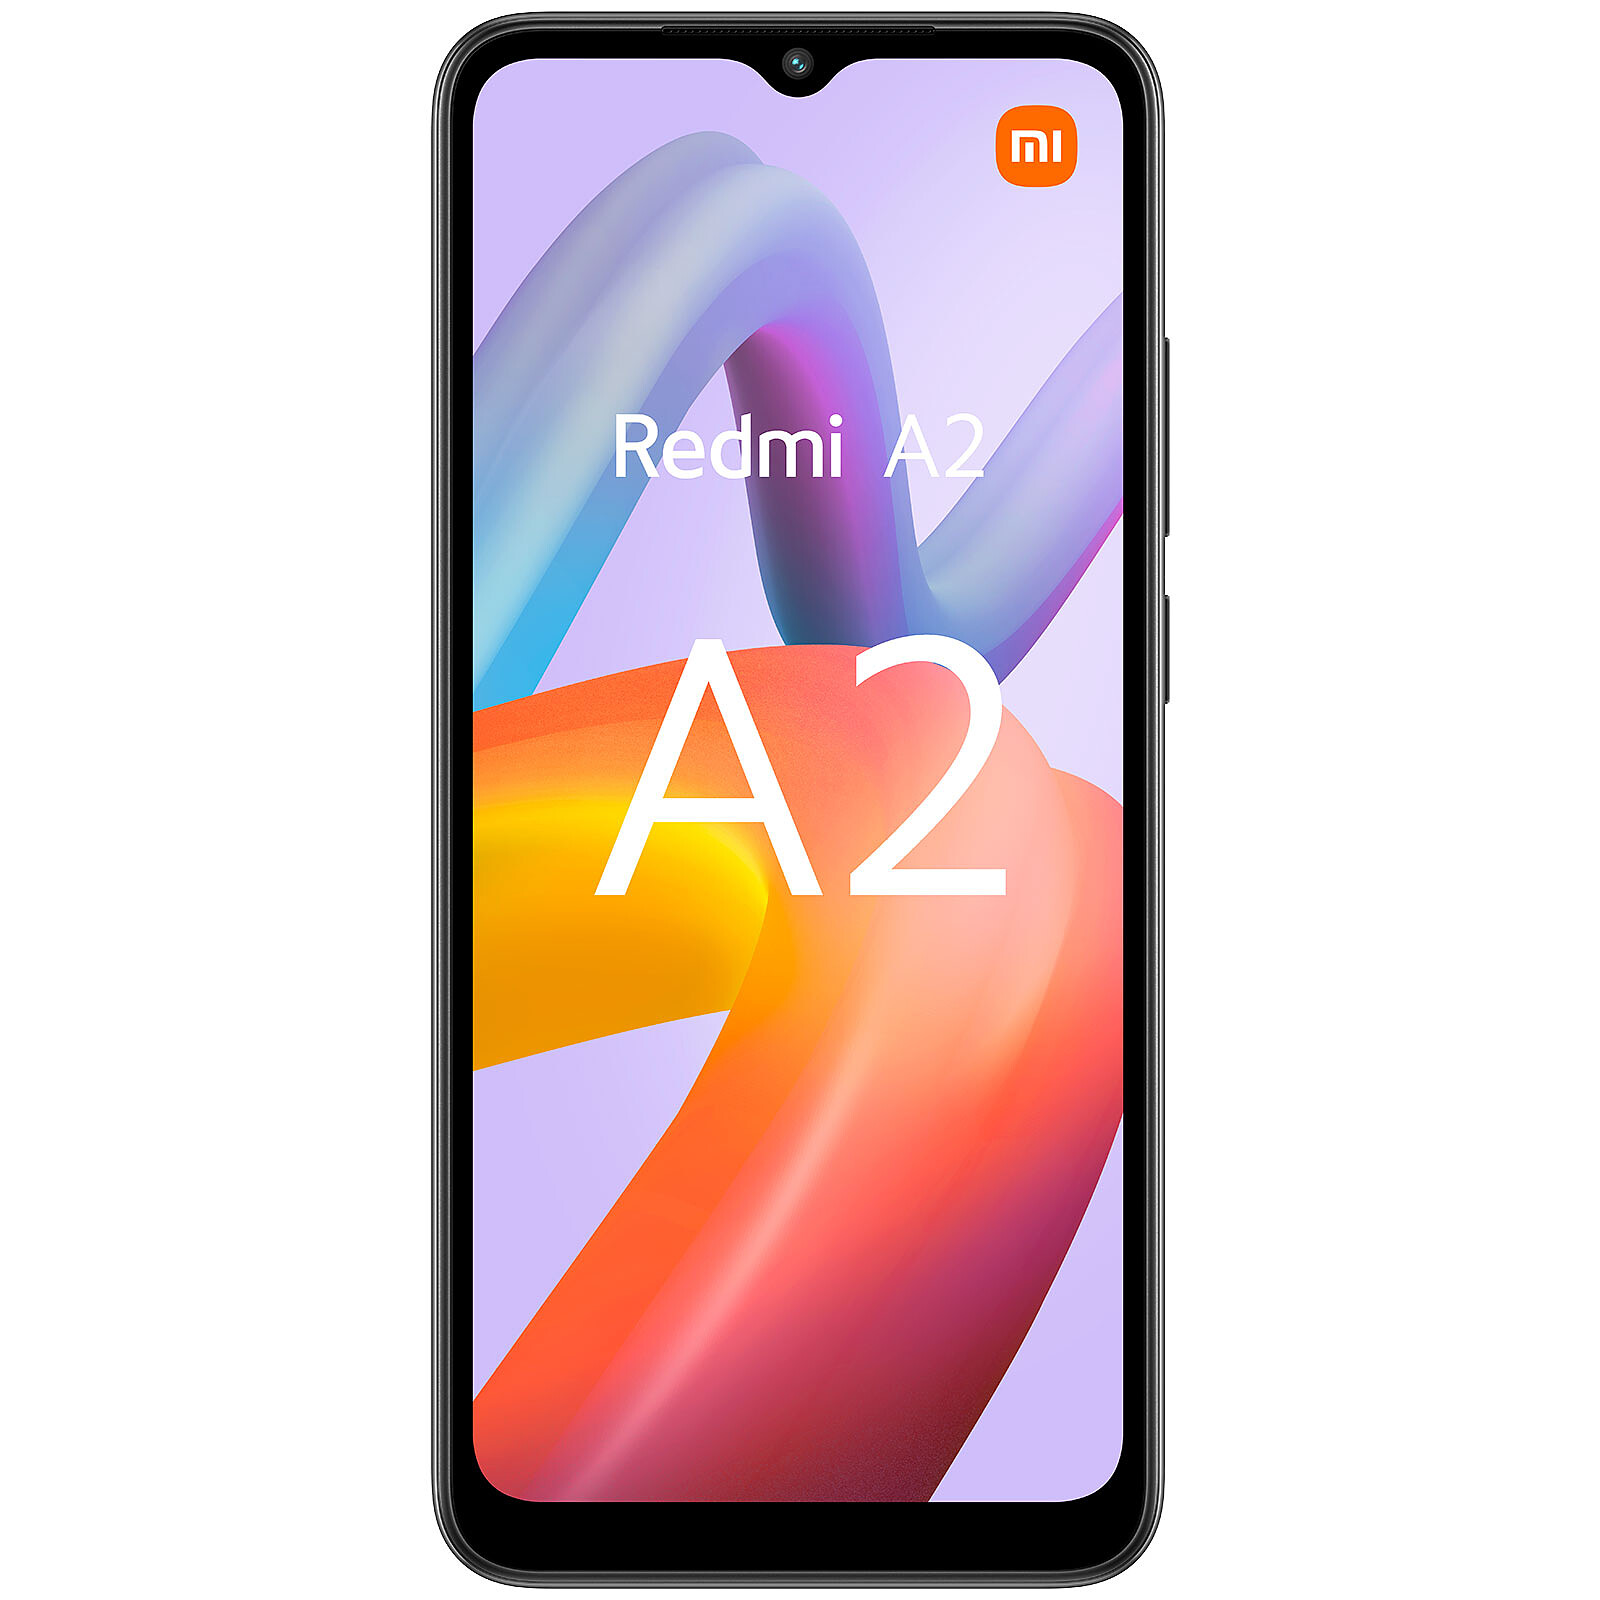 Xiaomi Mi A2, características, precio y ficha técnica